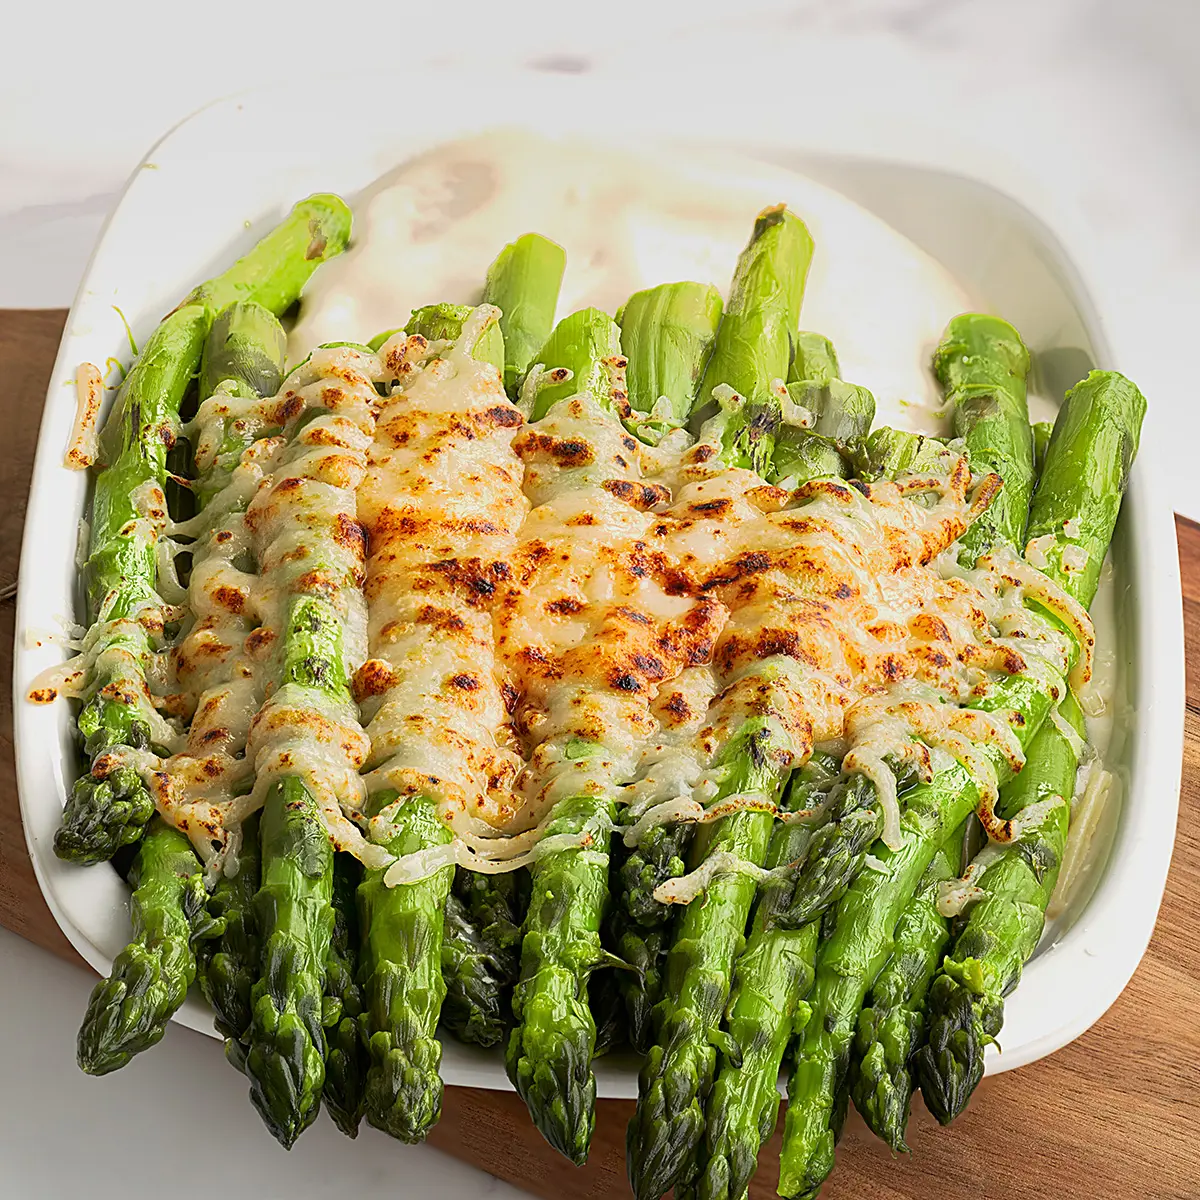 Oven-baked asparagus gratin